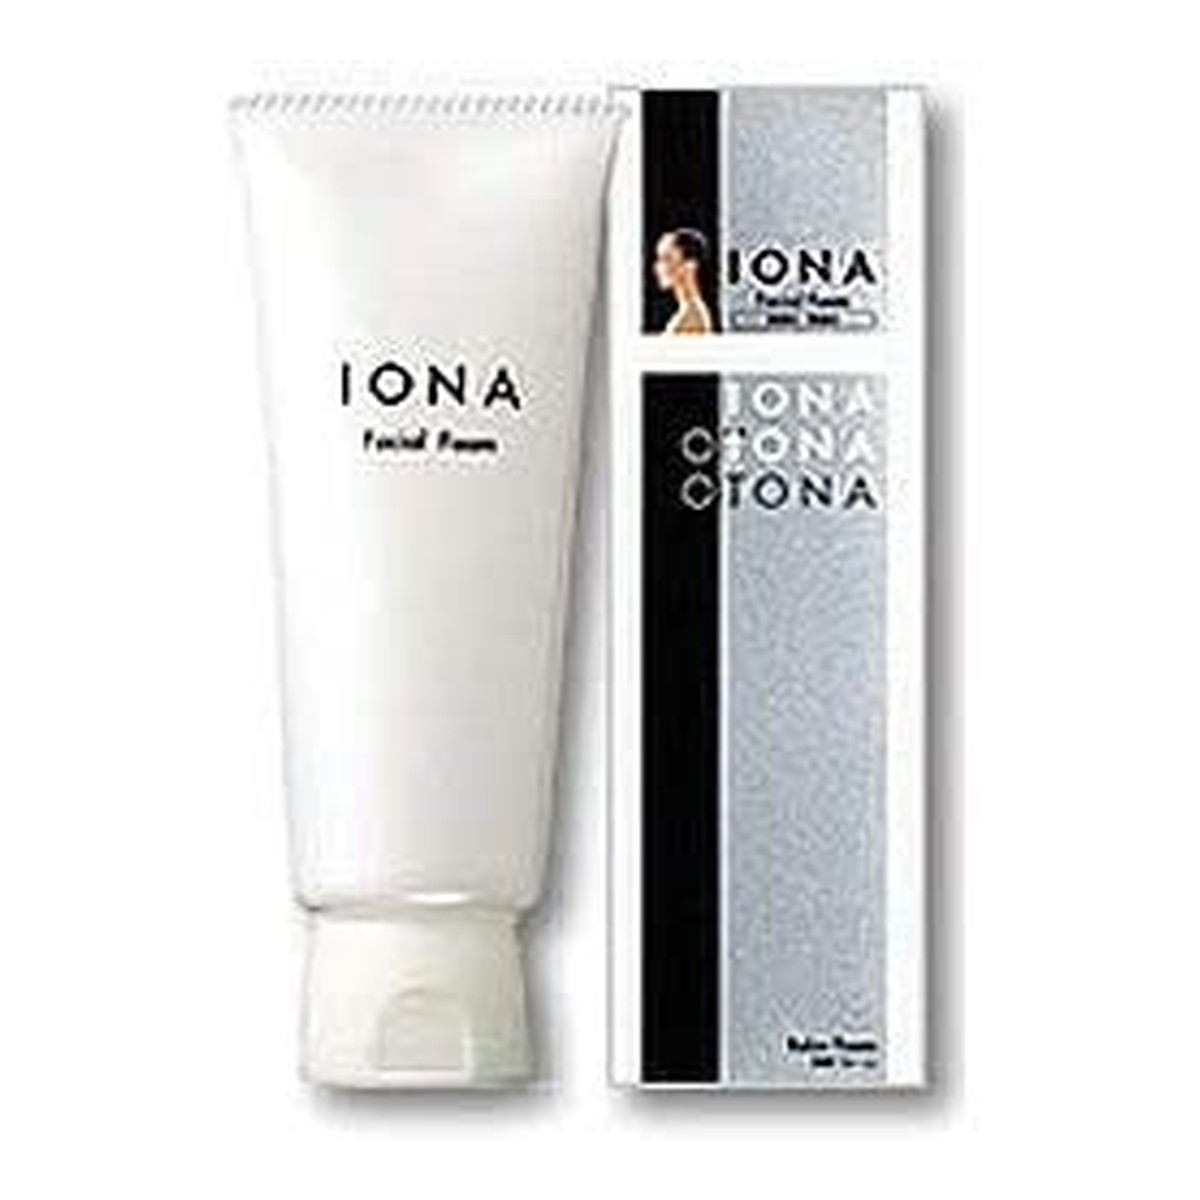 イオナ インターナショナル イオナ フェイシャル フォーム 100g×1 IONA 洗顔の商品画像